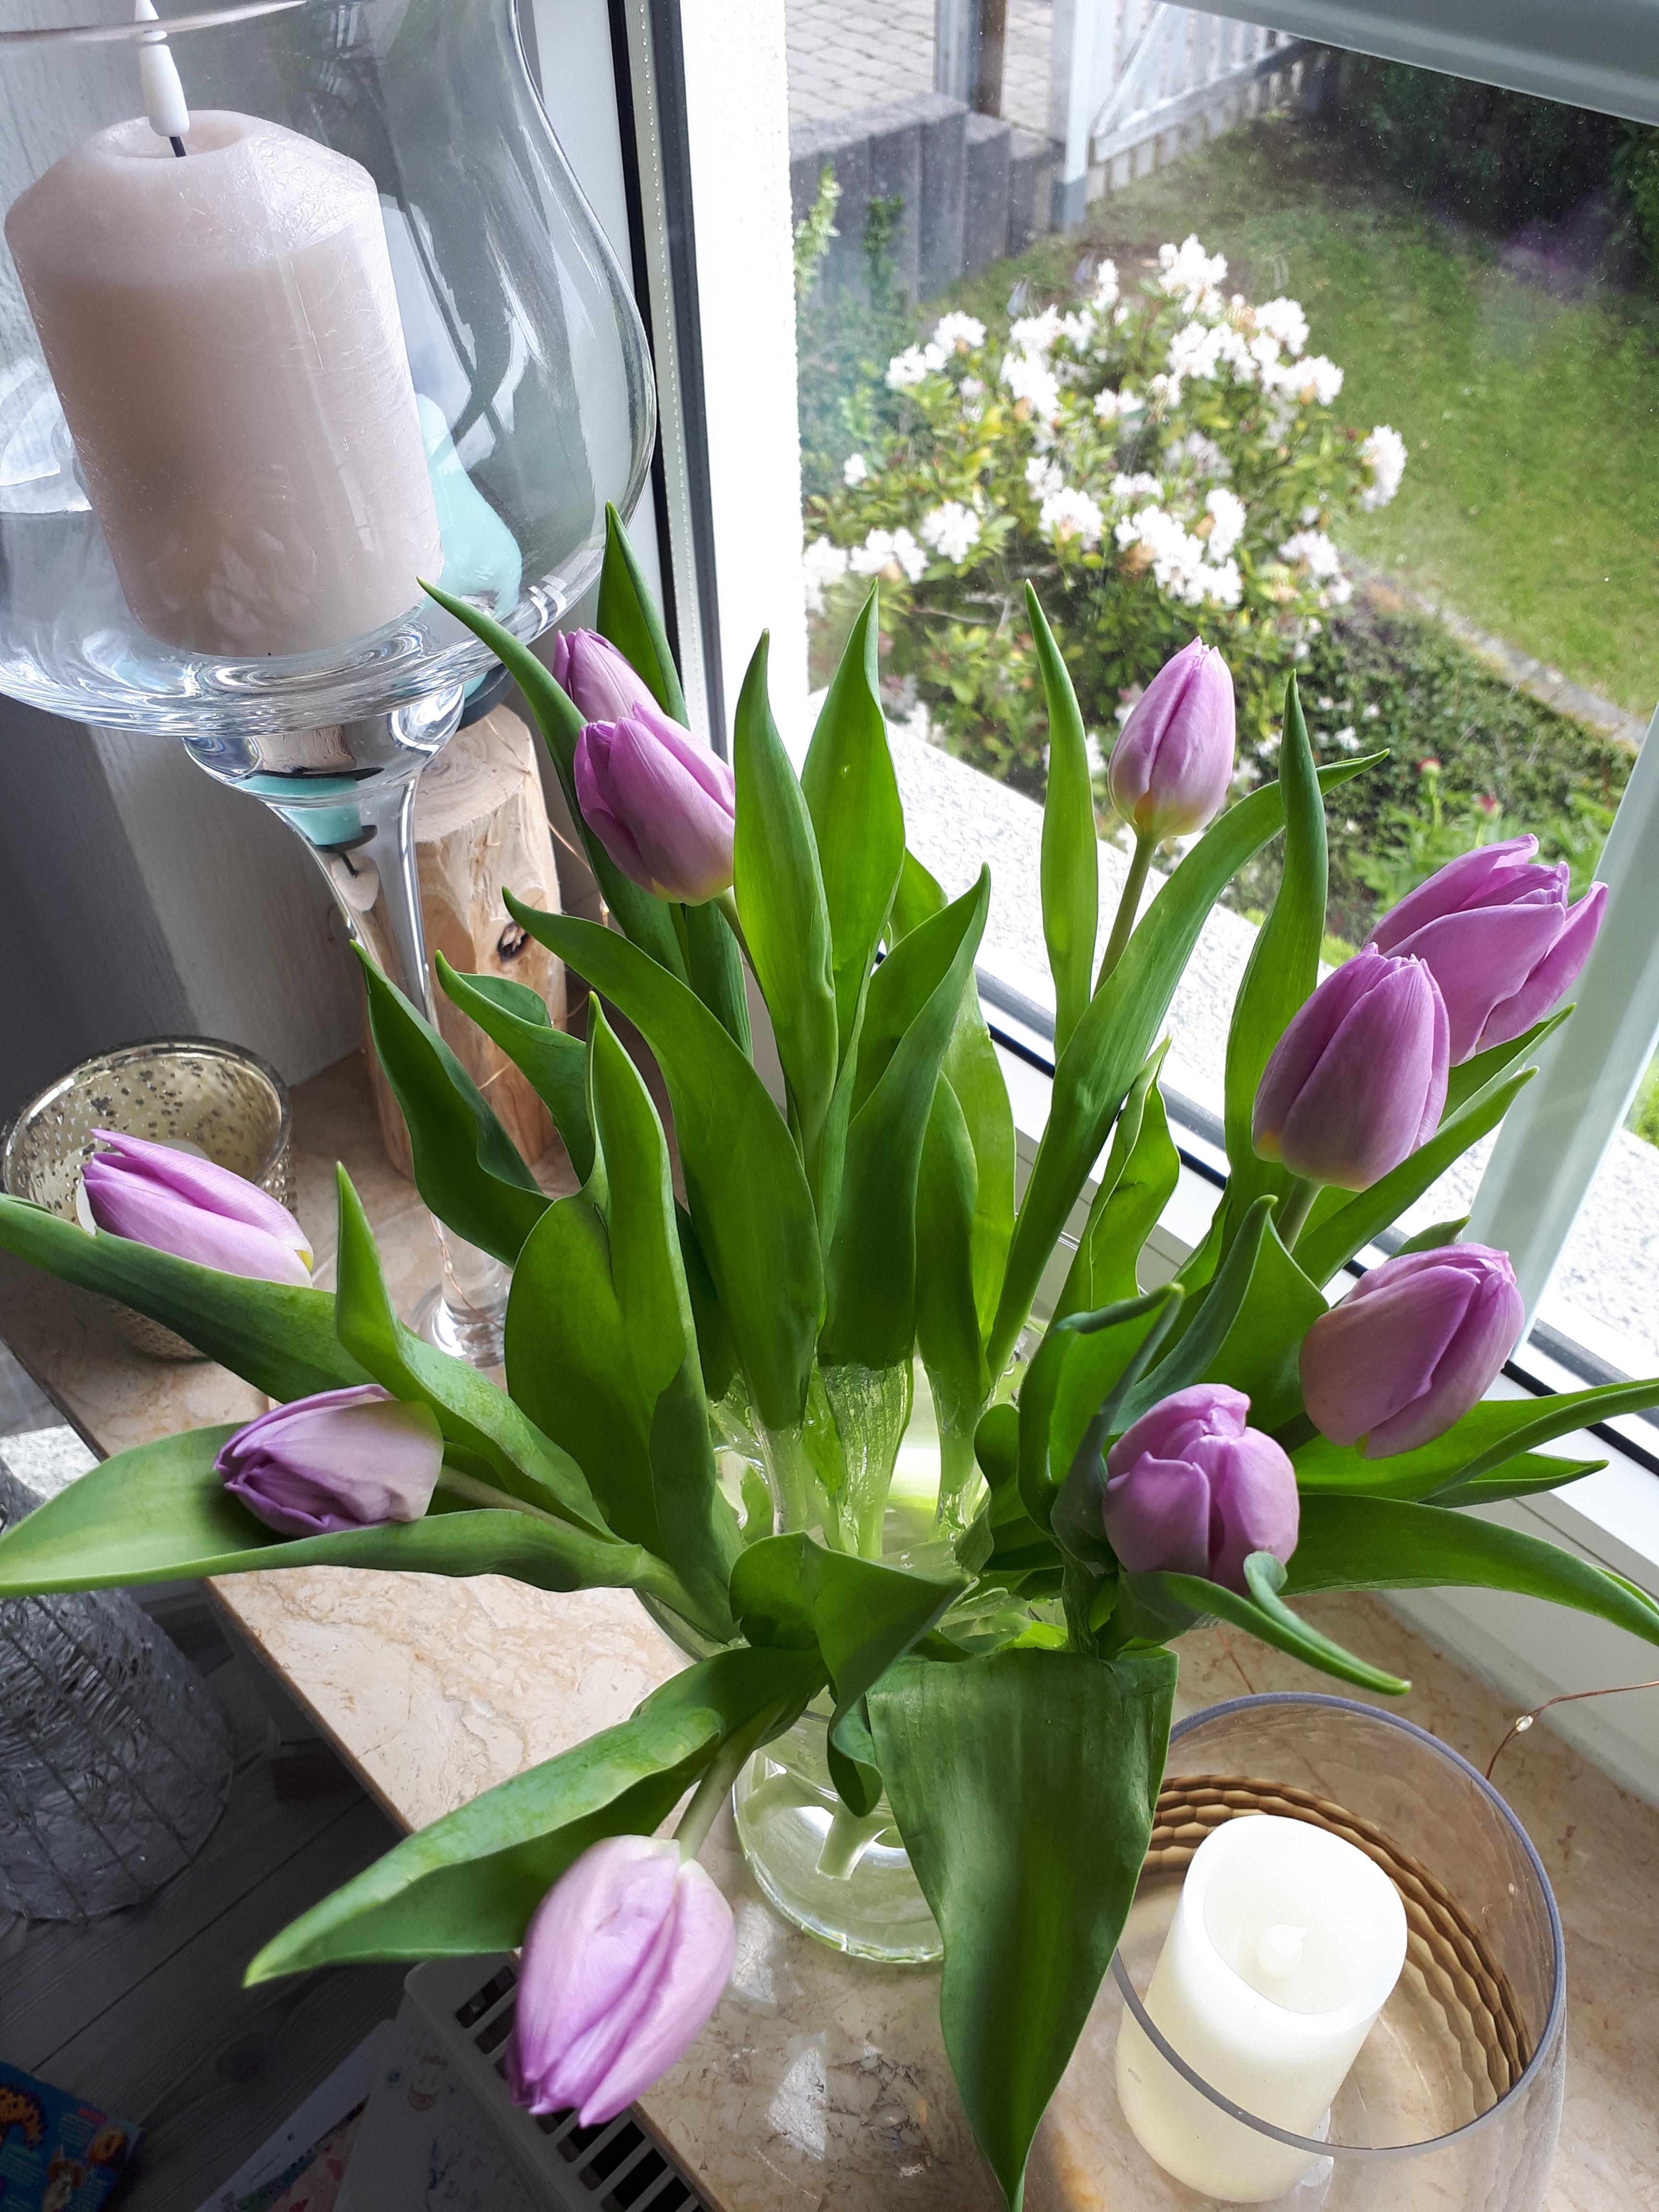 #livingchallenge #pflanzen
Wir lieben Blumen auf der Fensterbank im Essbereich 💜